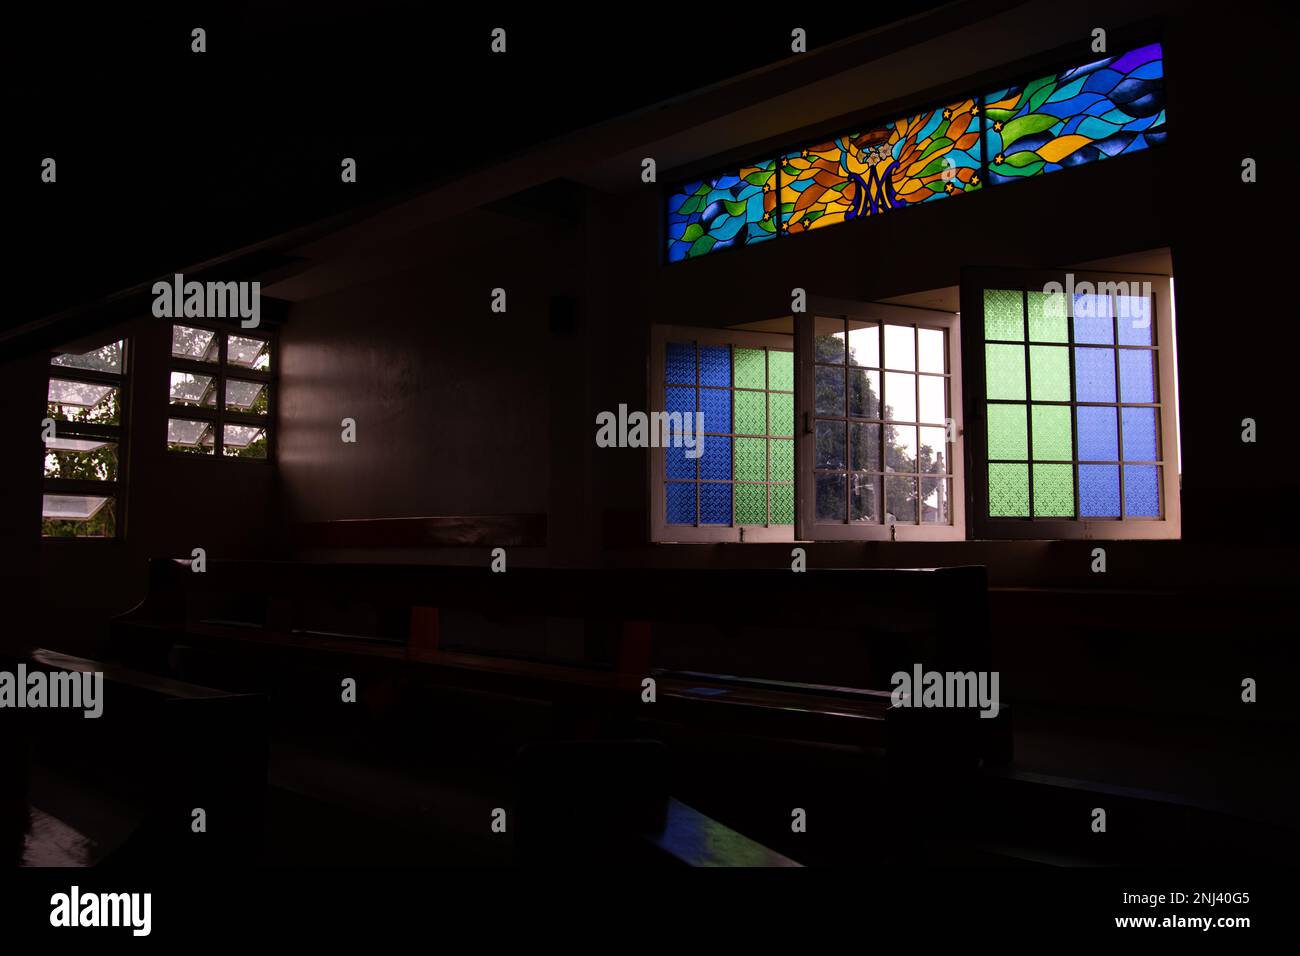 Vitraux de l'église et fenêtres colorées Banque D'Images